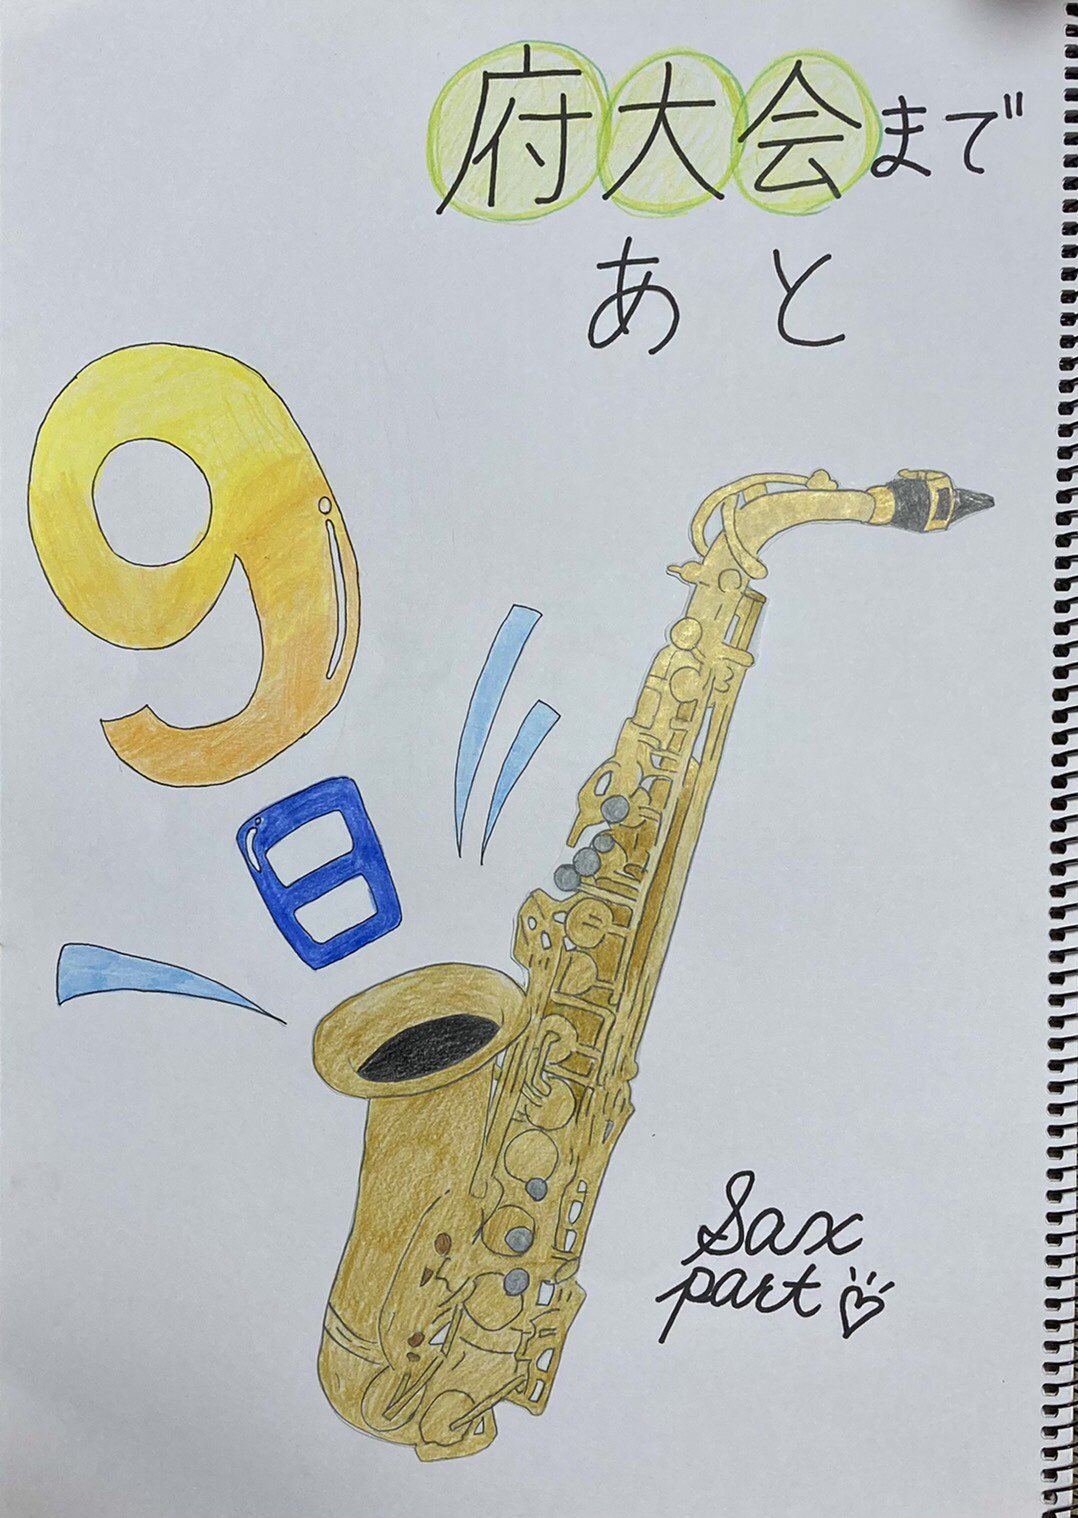 池田高校吹奏楽部 府大会まであと9日 担当は サックスパートです かわいいイラストで 9日を表現してくれています 今日はoffですが できることを常に考え 行動していきます T Co Uyx73ov3ra Twitter